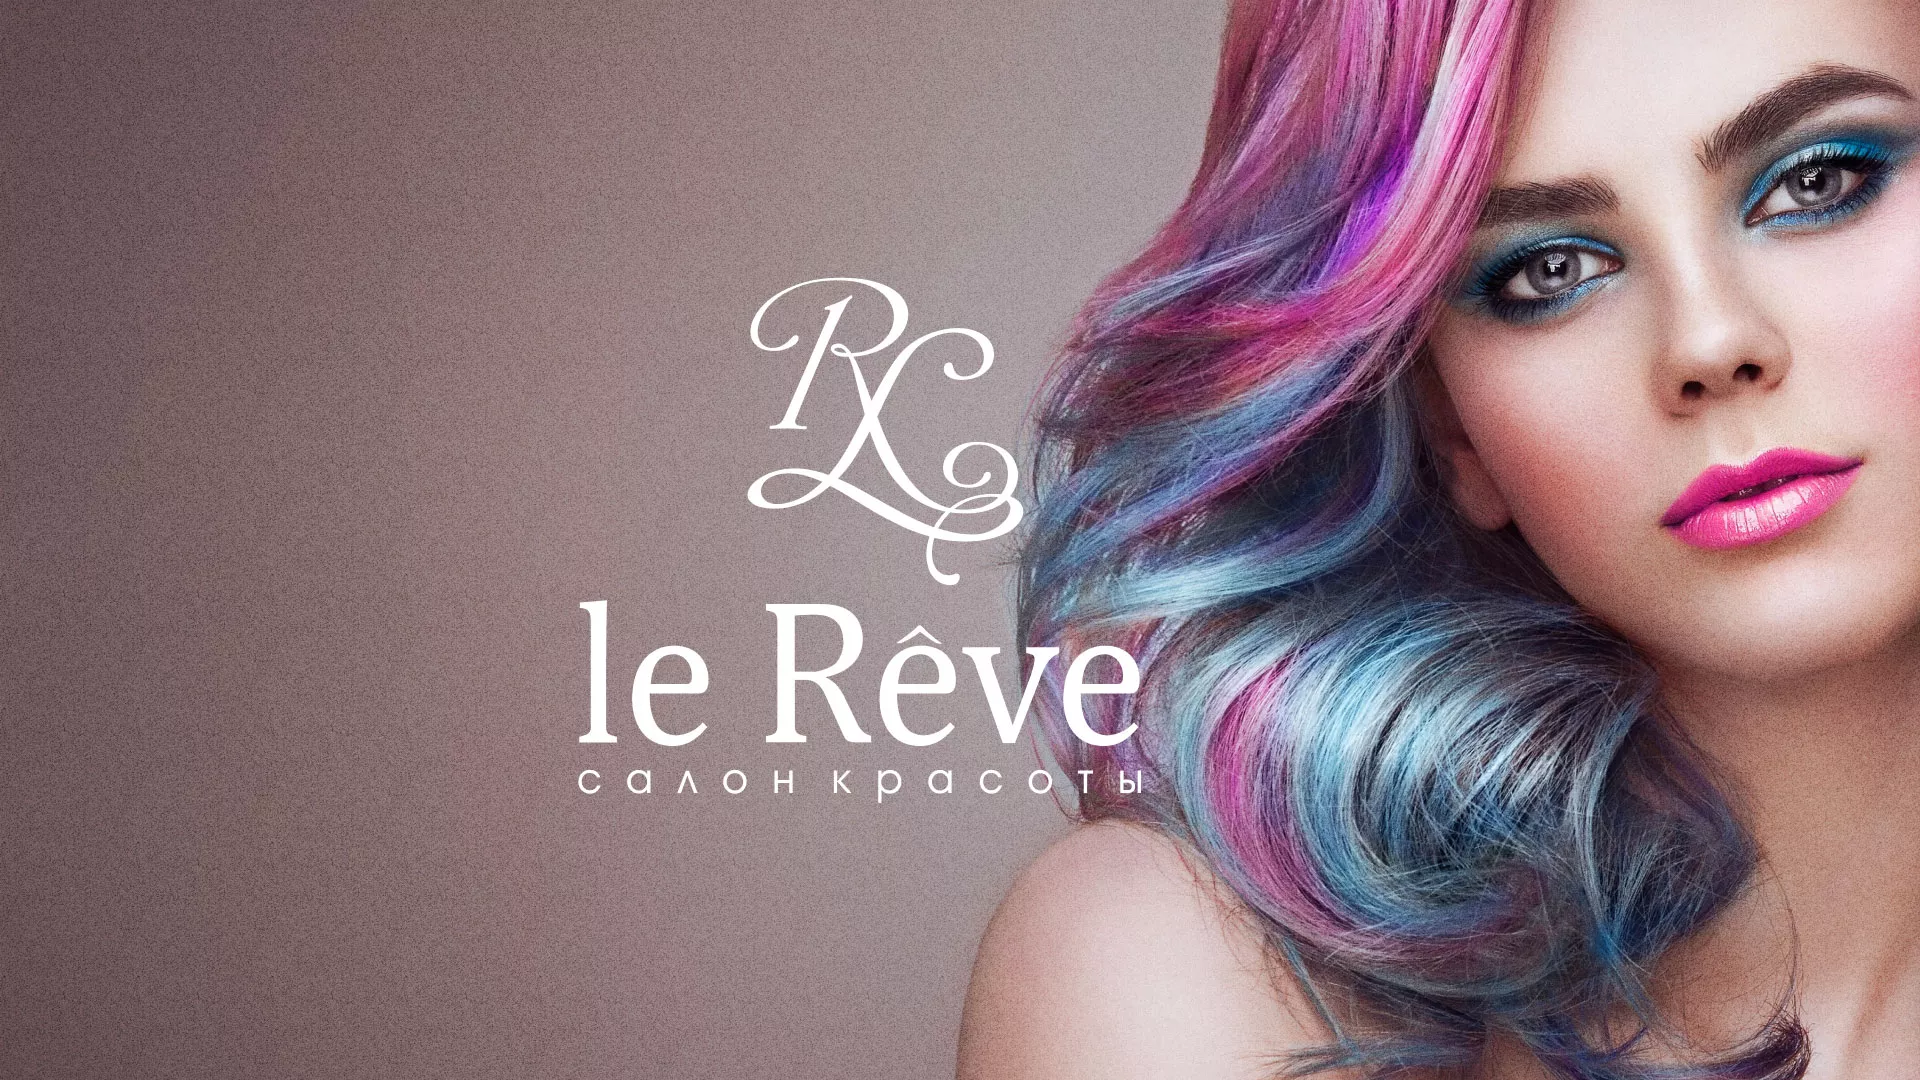 Создание сайта для салона красоты «Le Reve» в Вязьме